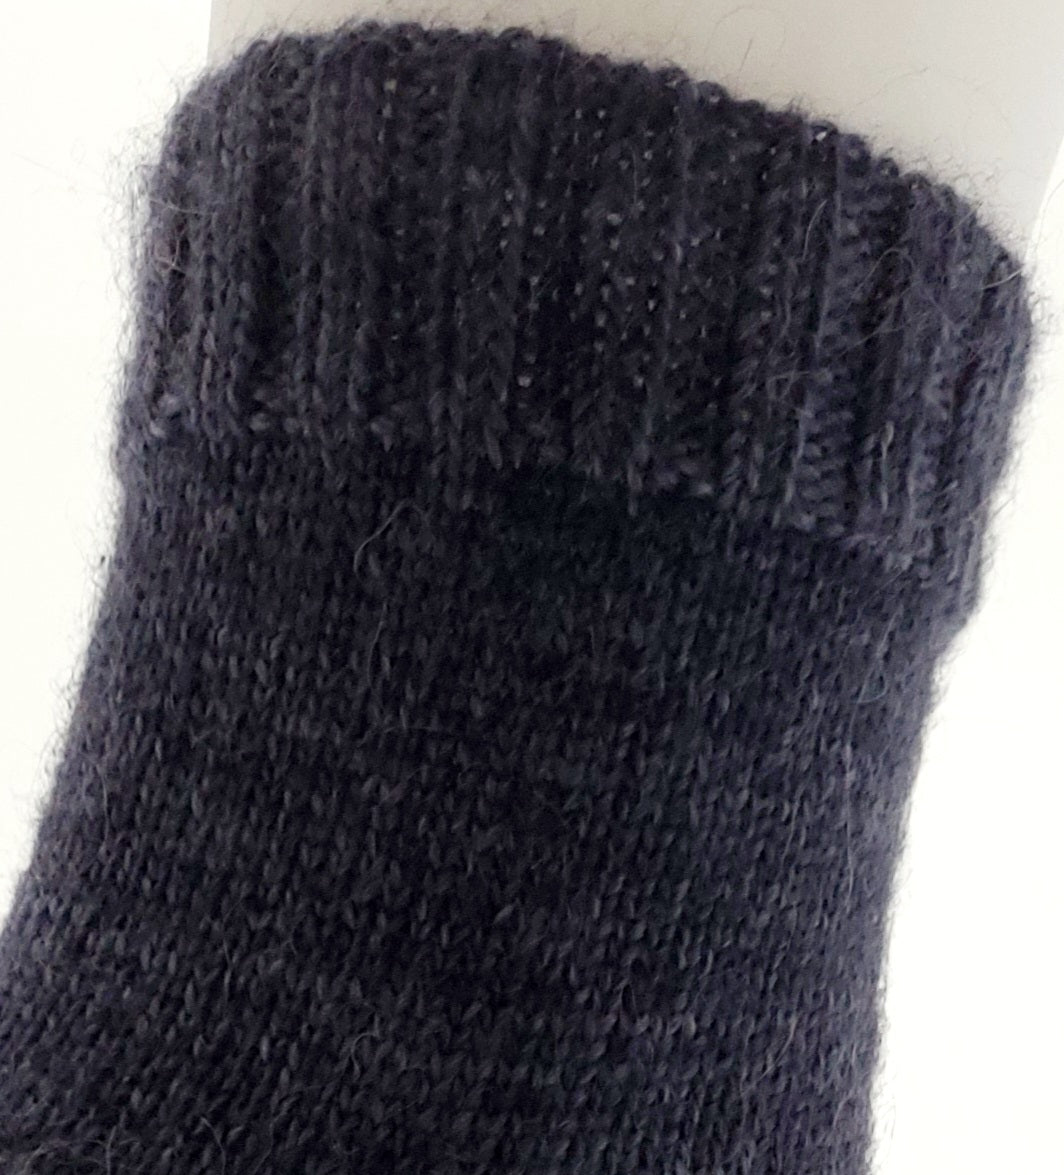 Made to order fingerless gloves